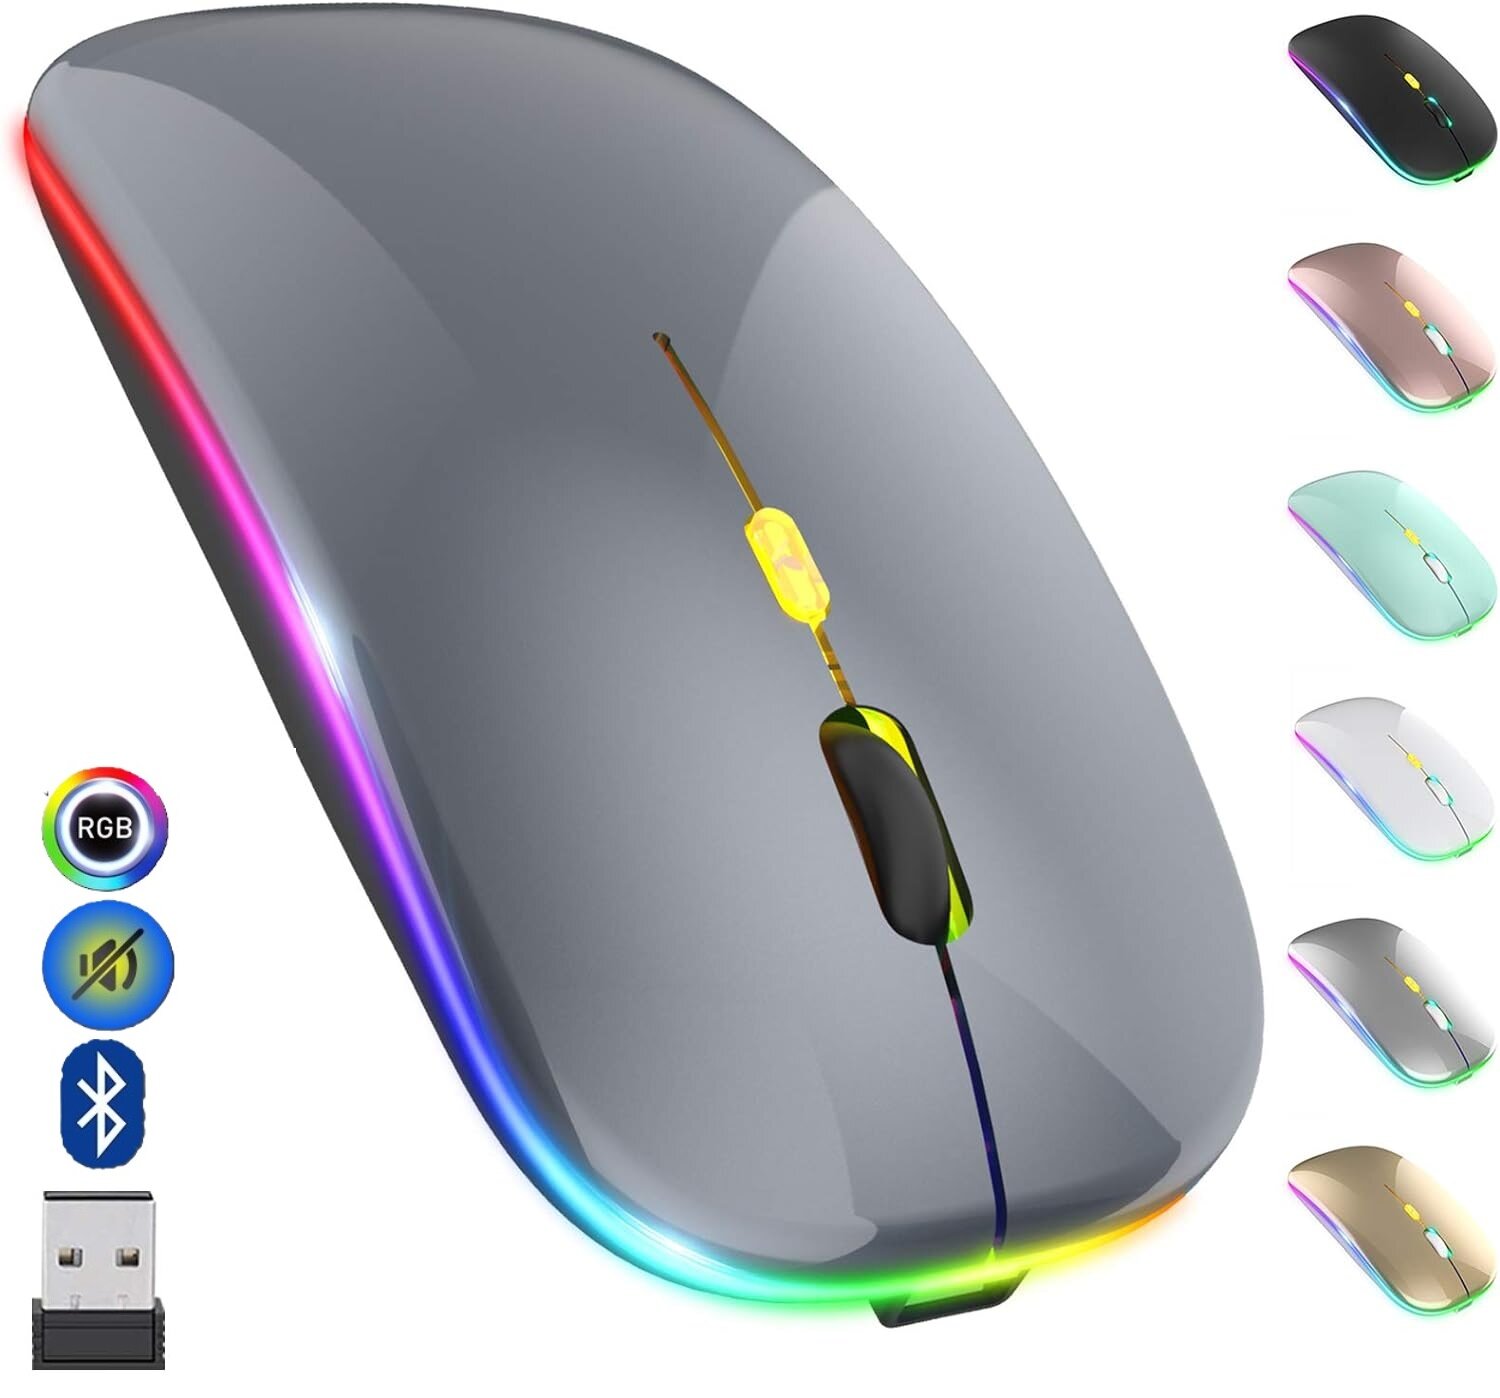 Беспроводная компьютерная мышь со встроенным аккумулятором и подсветкой RGB, Bluetooth, WiFi 2.4 гц, 3 регулируемых уровня DPI, серый